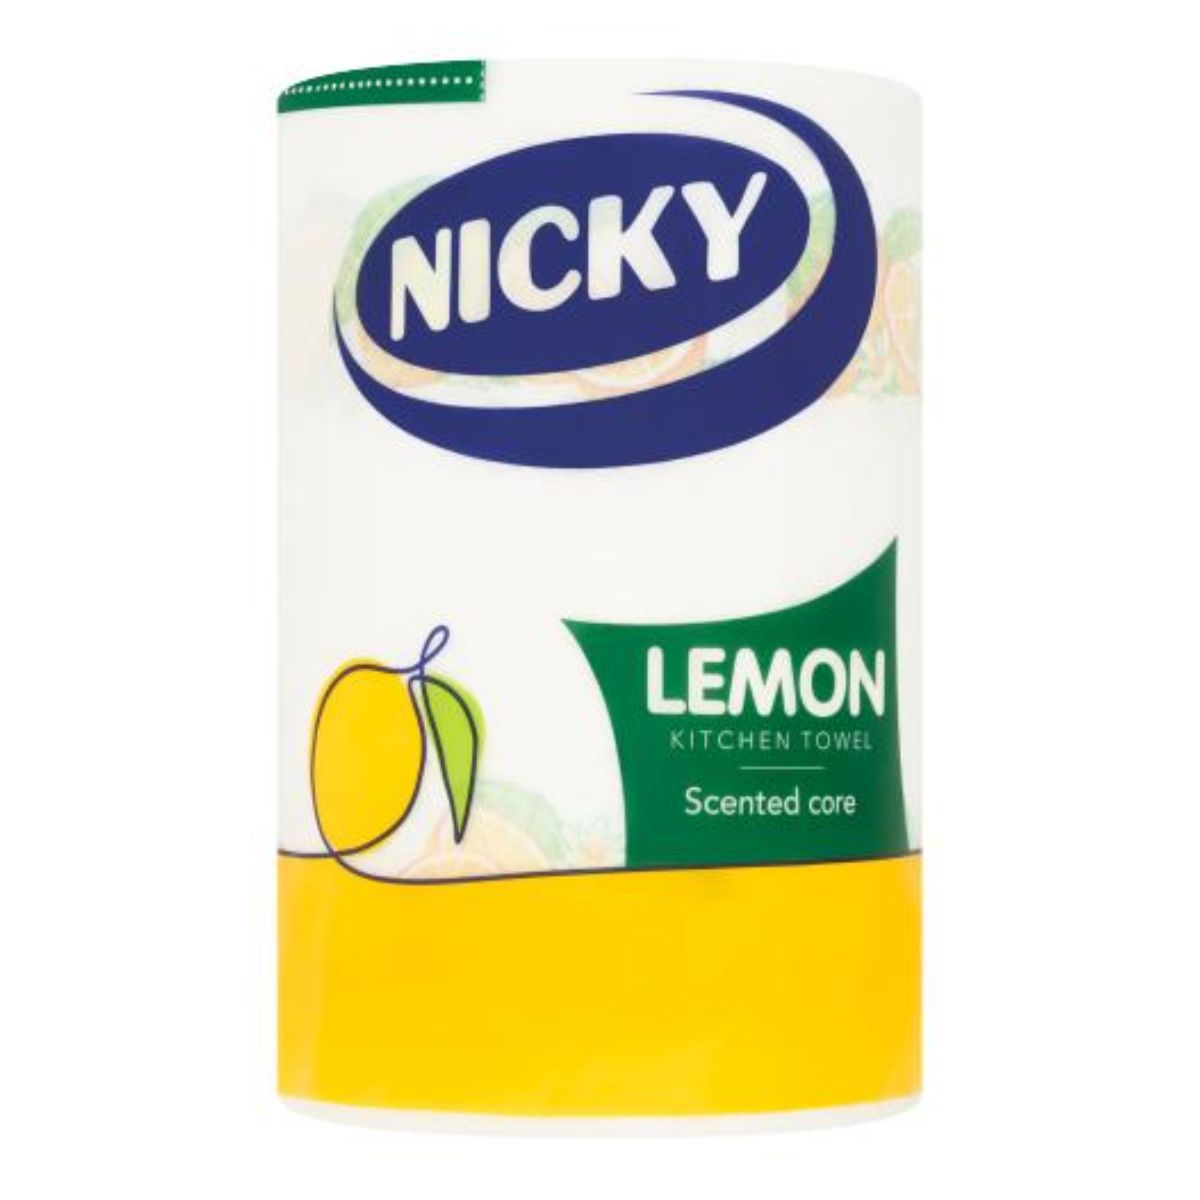 Nicky - Lemon Kitchen Towel - 1pcs 250 ml.